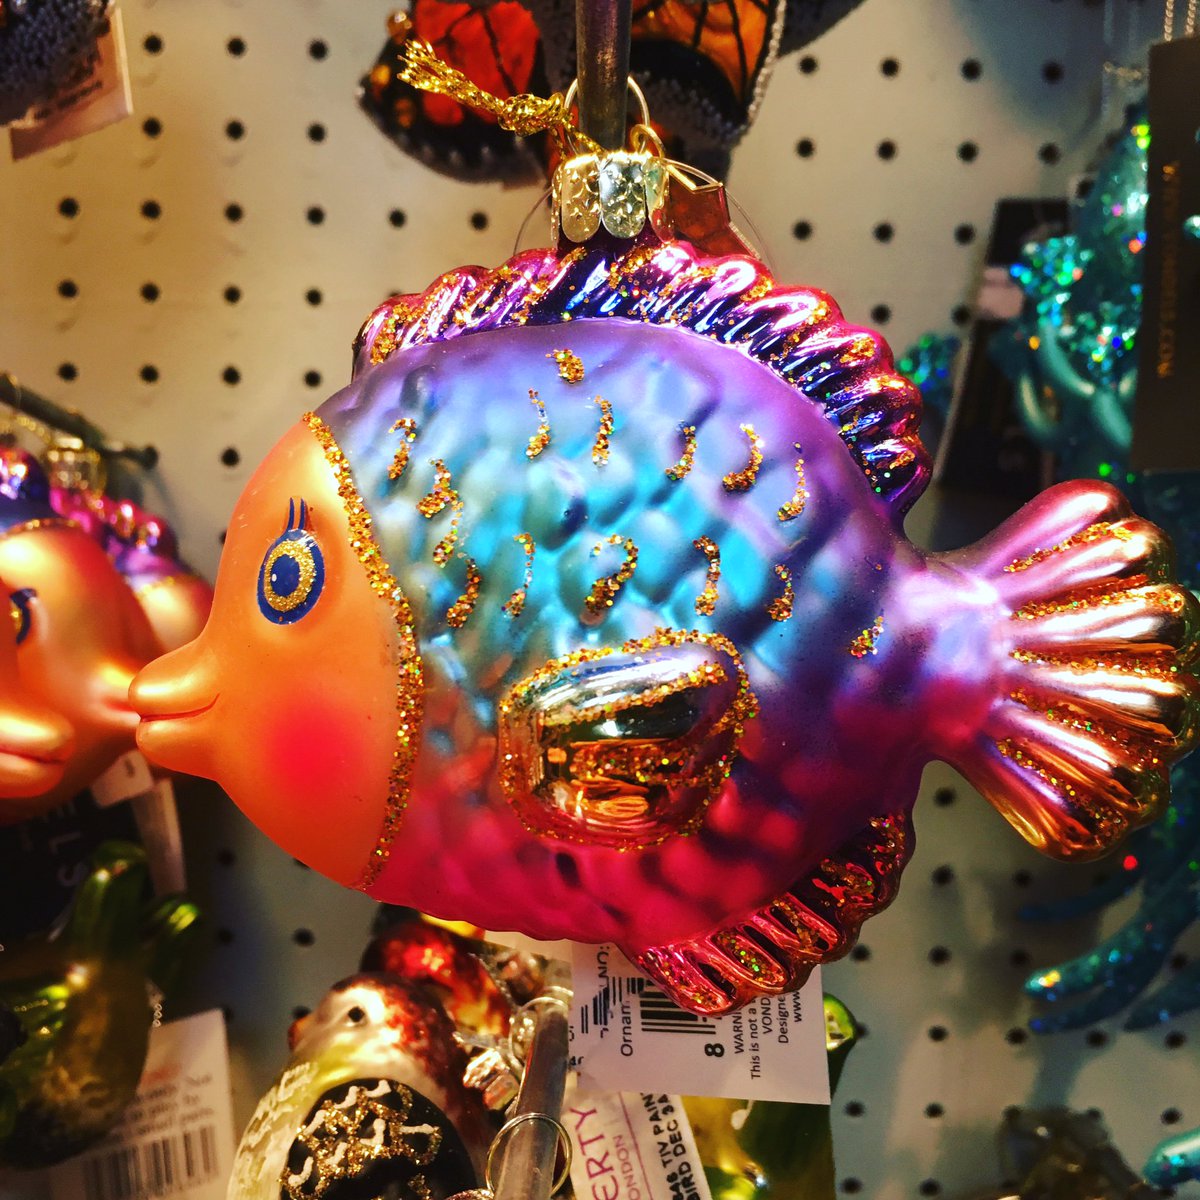 Who wouldn’t want a fish themed Christmas tree? #decorationoftheday #Christmas #christmasdecor #christmasdecorations #christmasdecorating #bohochristmas #christmastree #mermaid #mermaidchristmas #libertylondon